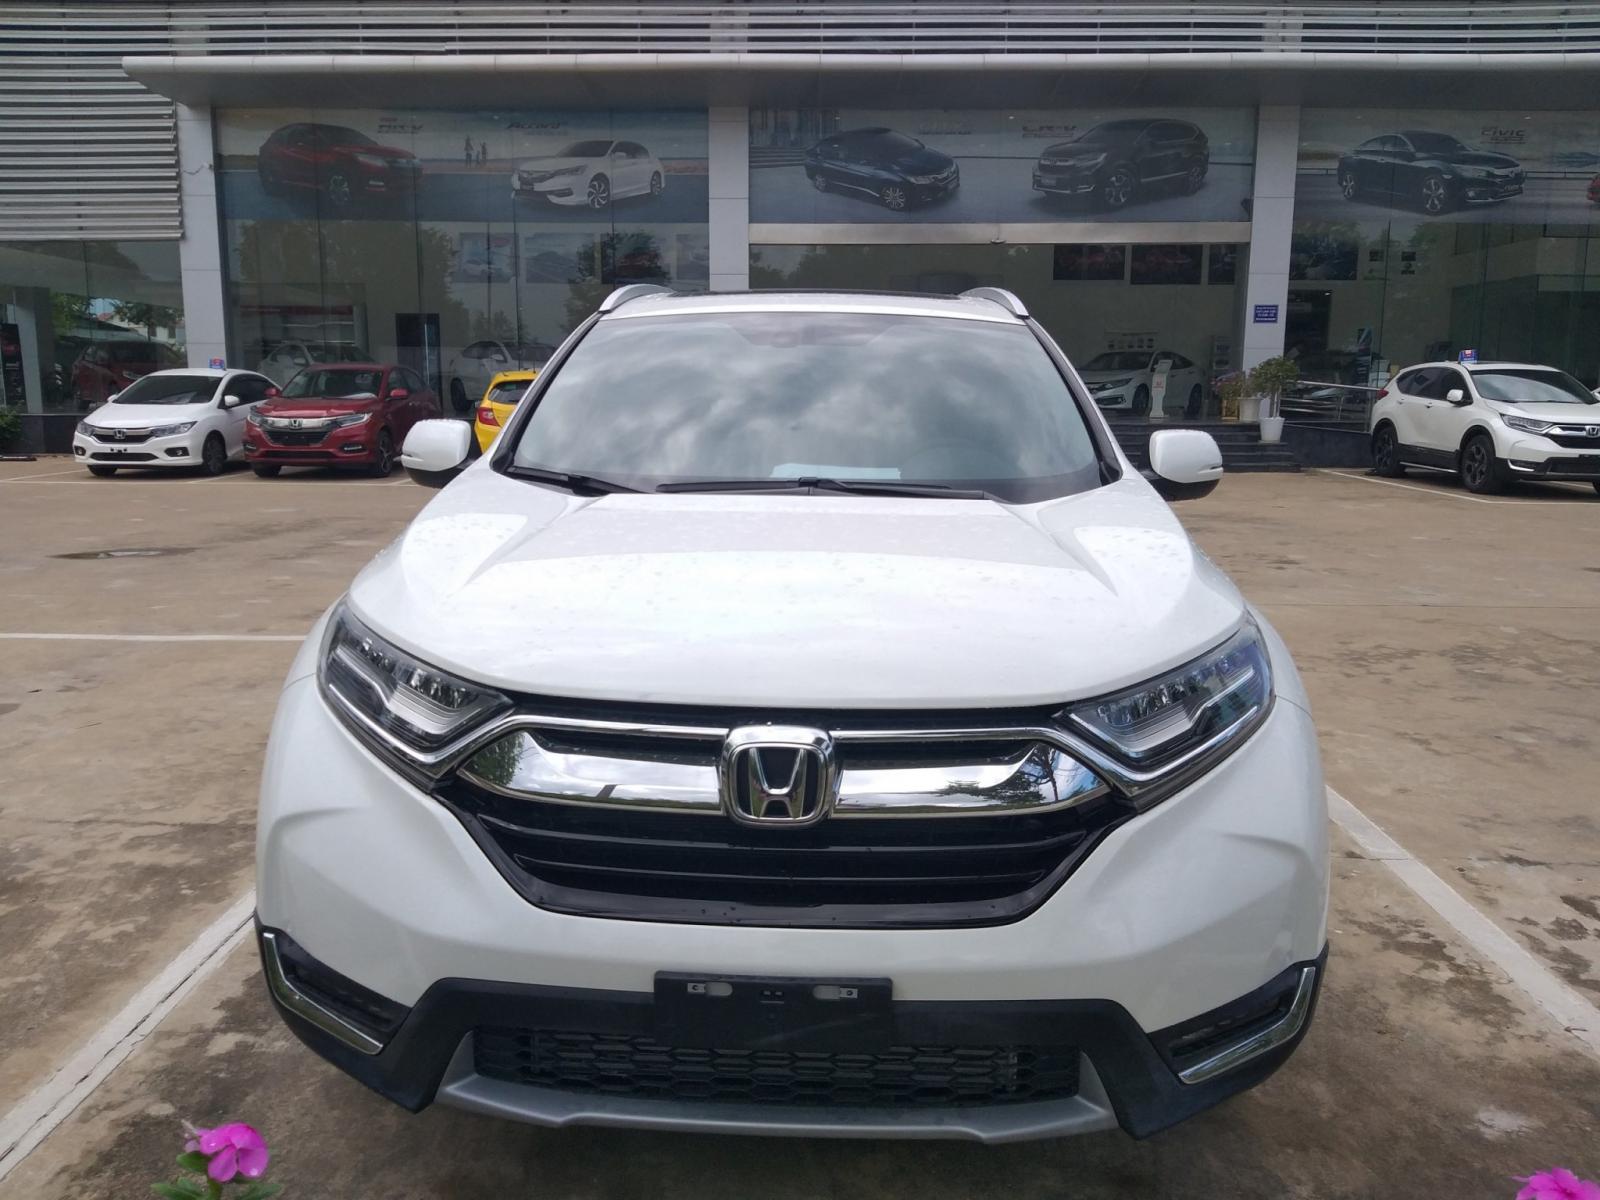 Giao ngay Honda CR-V 1.5 l, màu trắng, đời 2019, giảm giá sốc khi mua xe tại Honda Ôtô Thanh Hóa, LH: 0962028368.-2